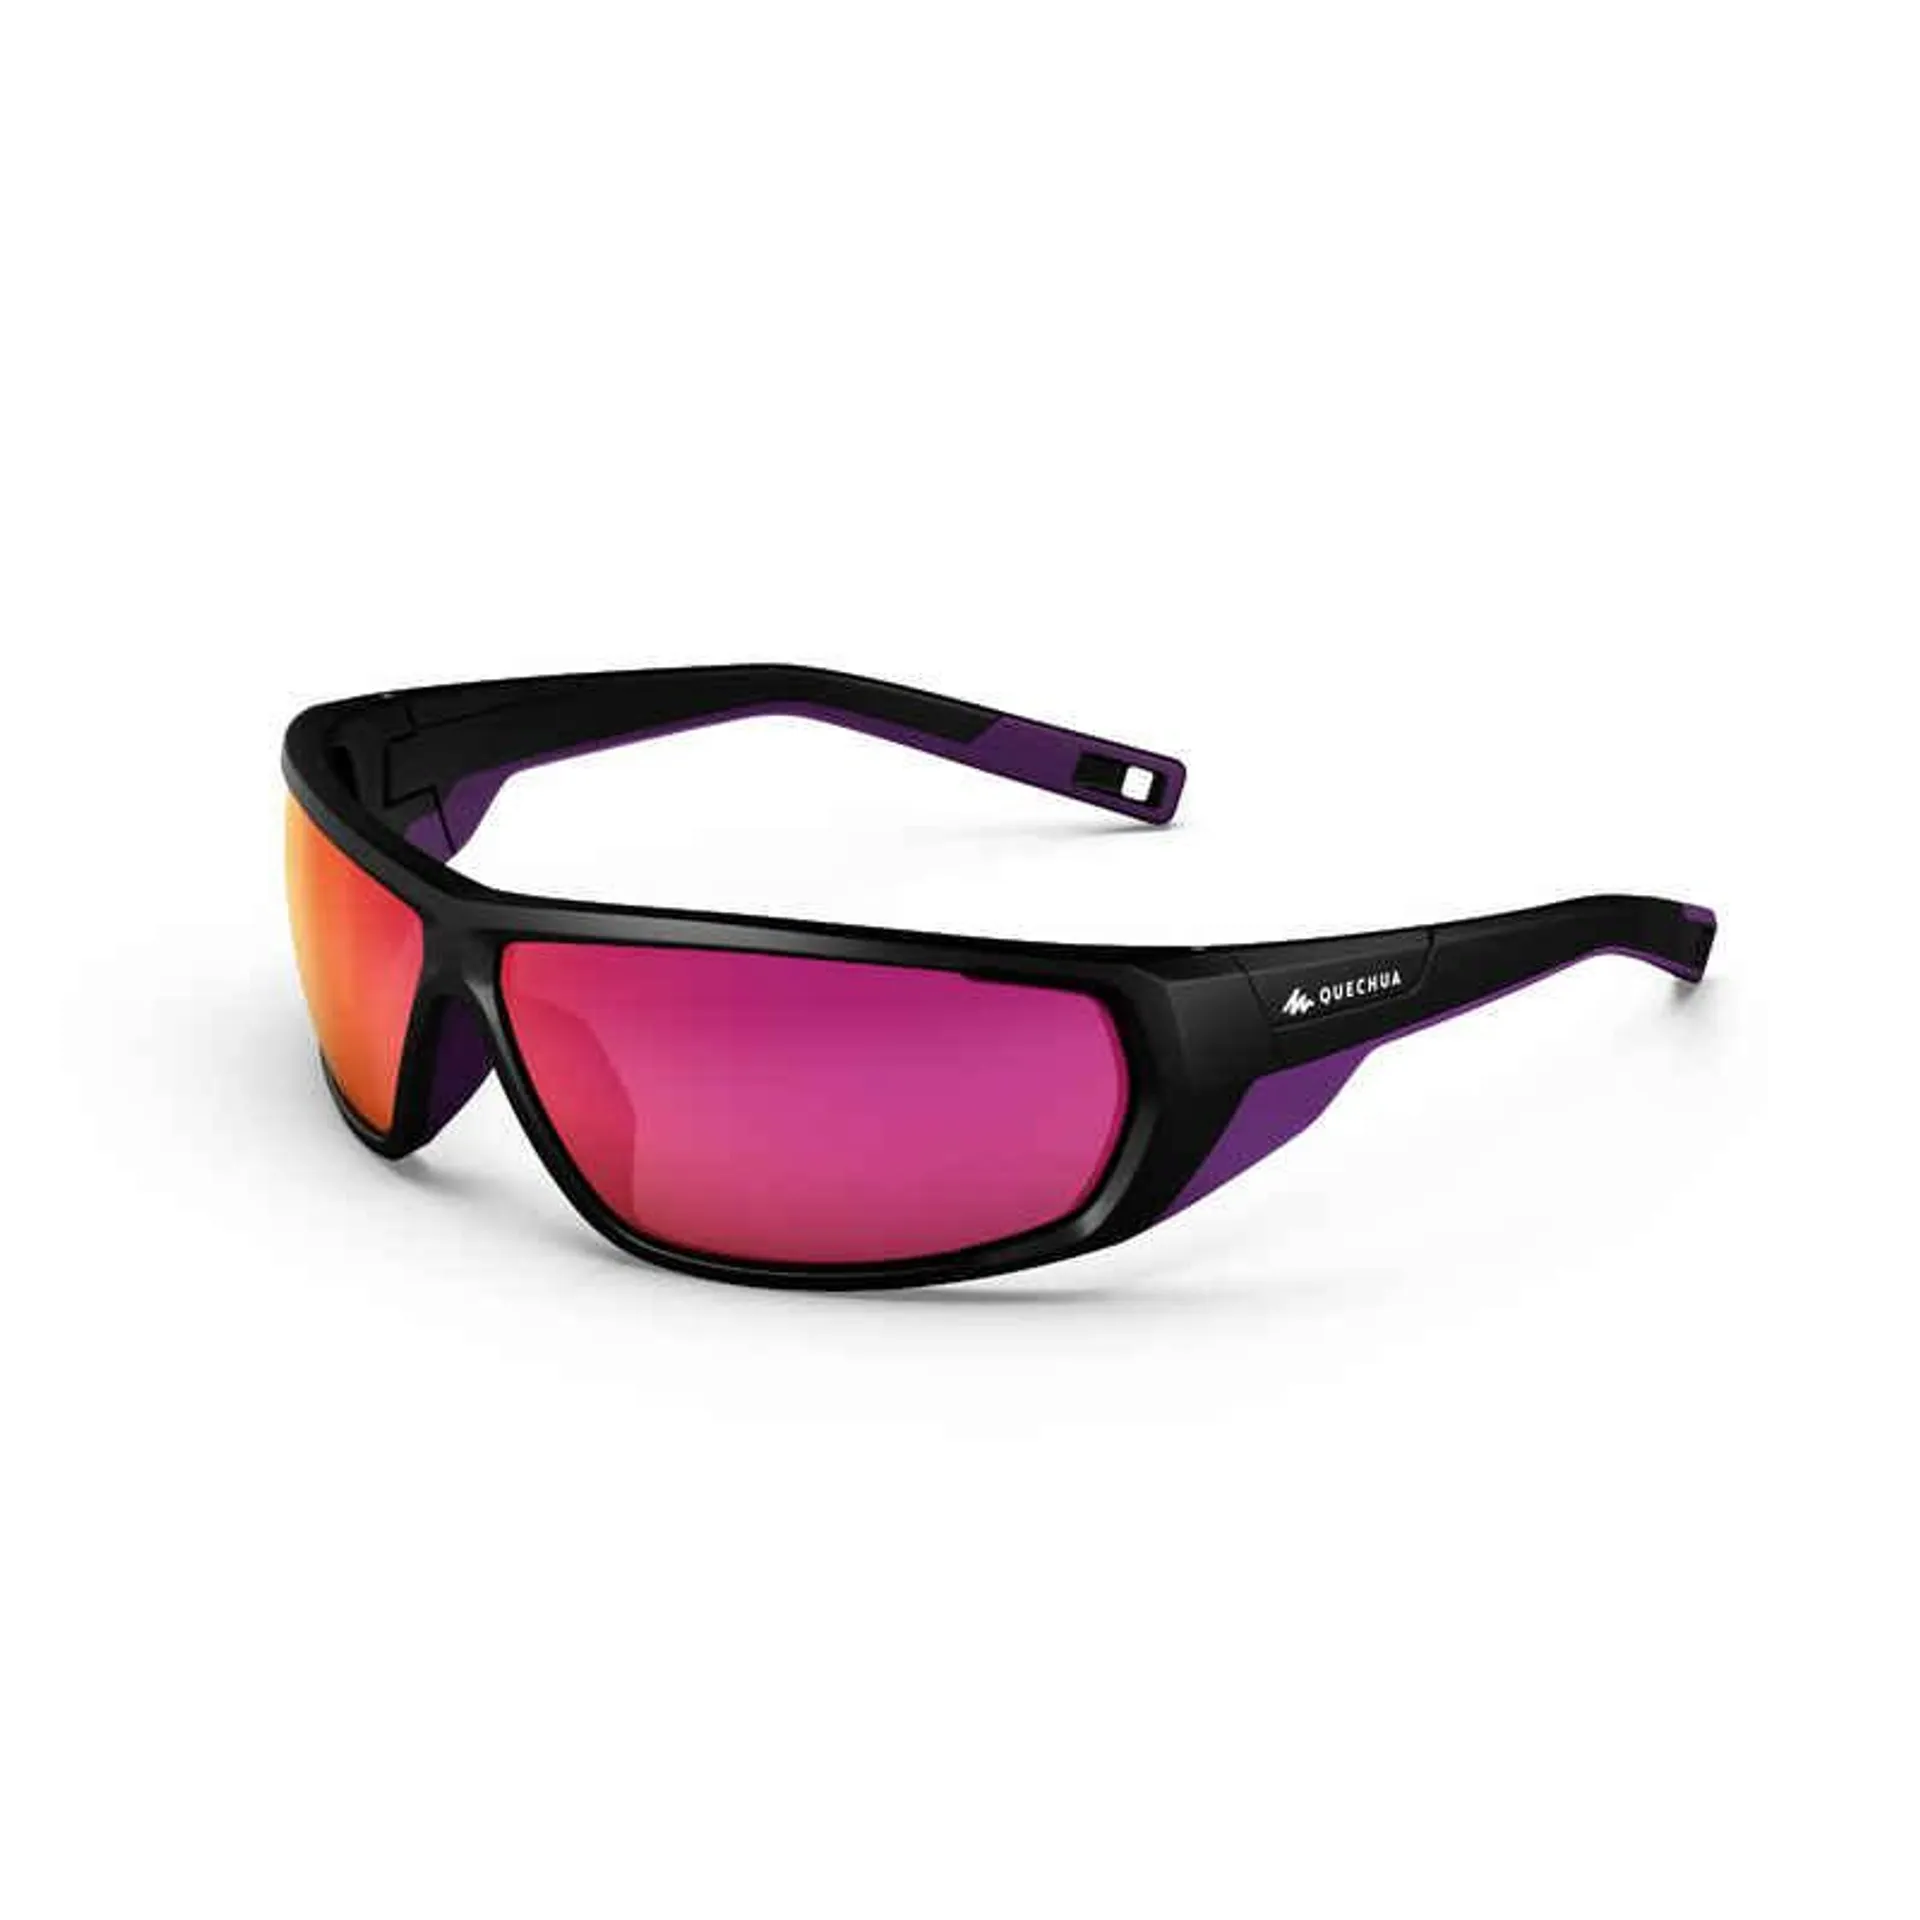 Turistické slnečné okuliare MH570 kategória 4 fialové